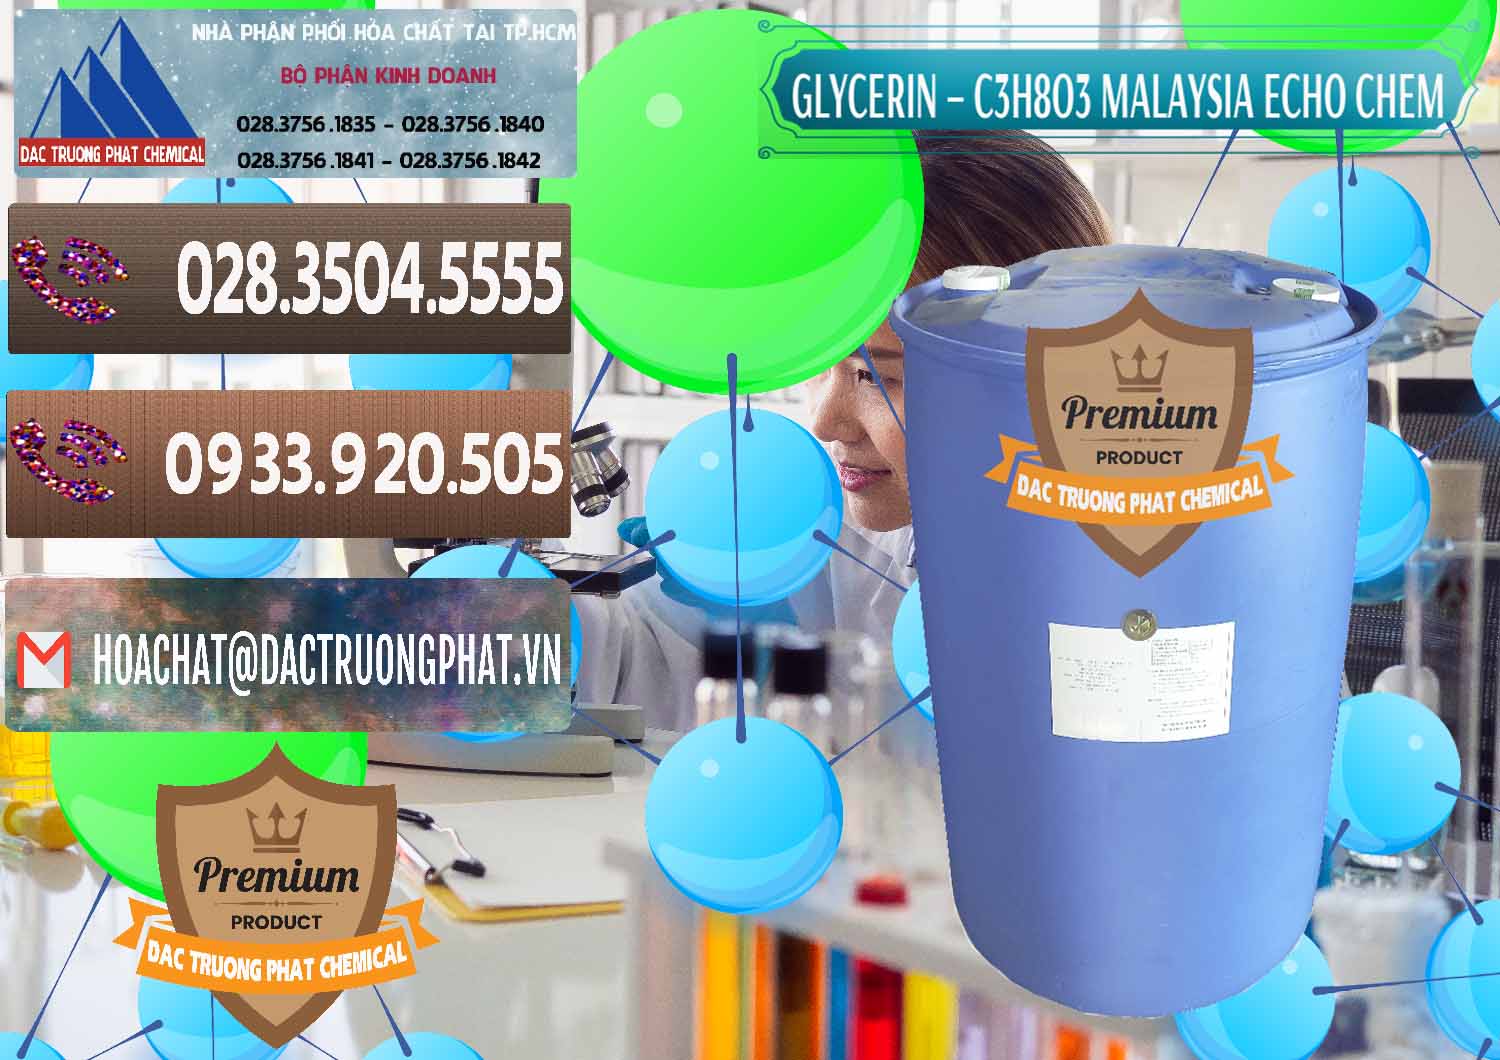 Nhà cung ứng ( bán ) Glycerin – C3H8O3 99.7% Echo Chem Malaysia - 0273 - Đơn vị chuyên kinh doanh và cung cấp hóa chất tại TP.HCM - hoachatviet.net